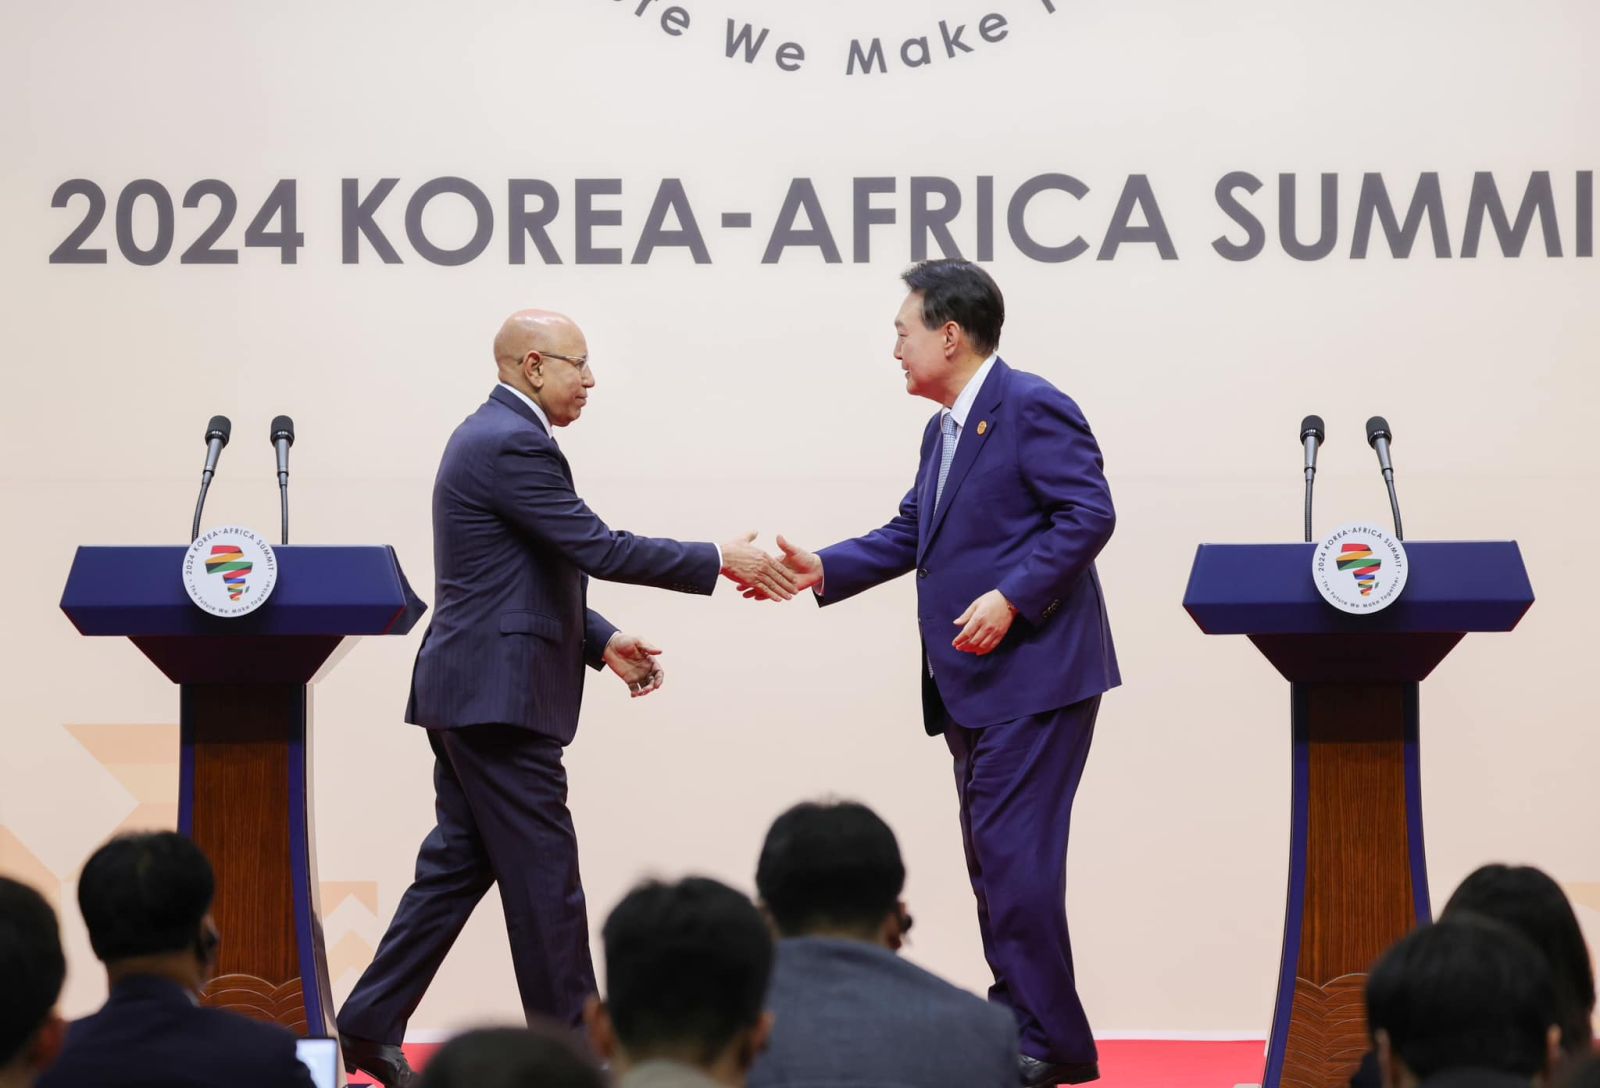 الرئيس غزواني ونظيره الكوري في ختام القمة الكورية الافريقية